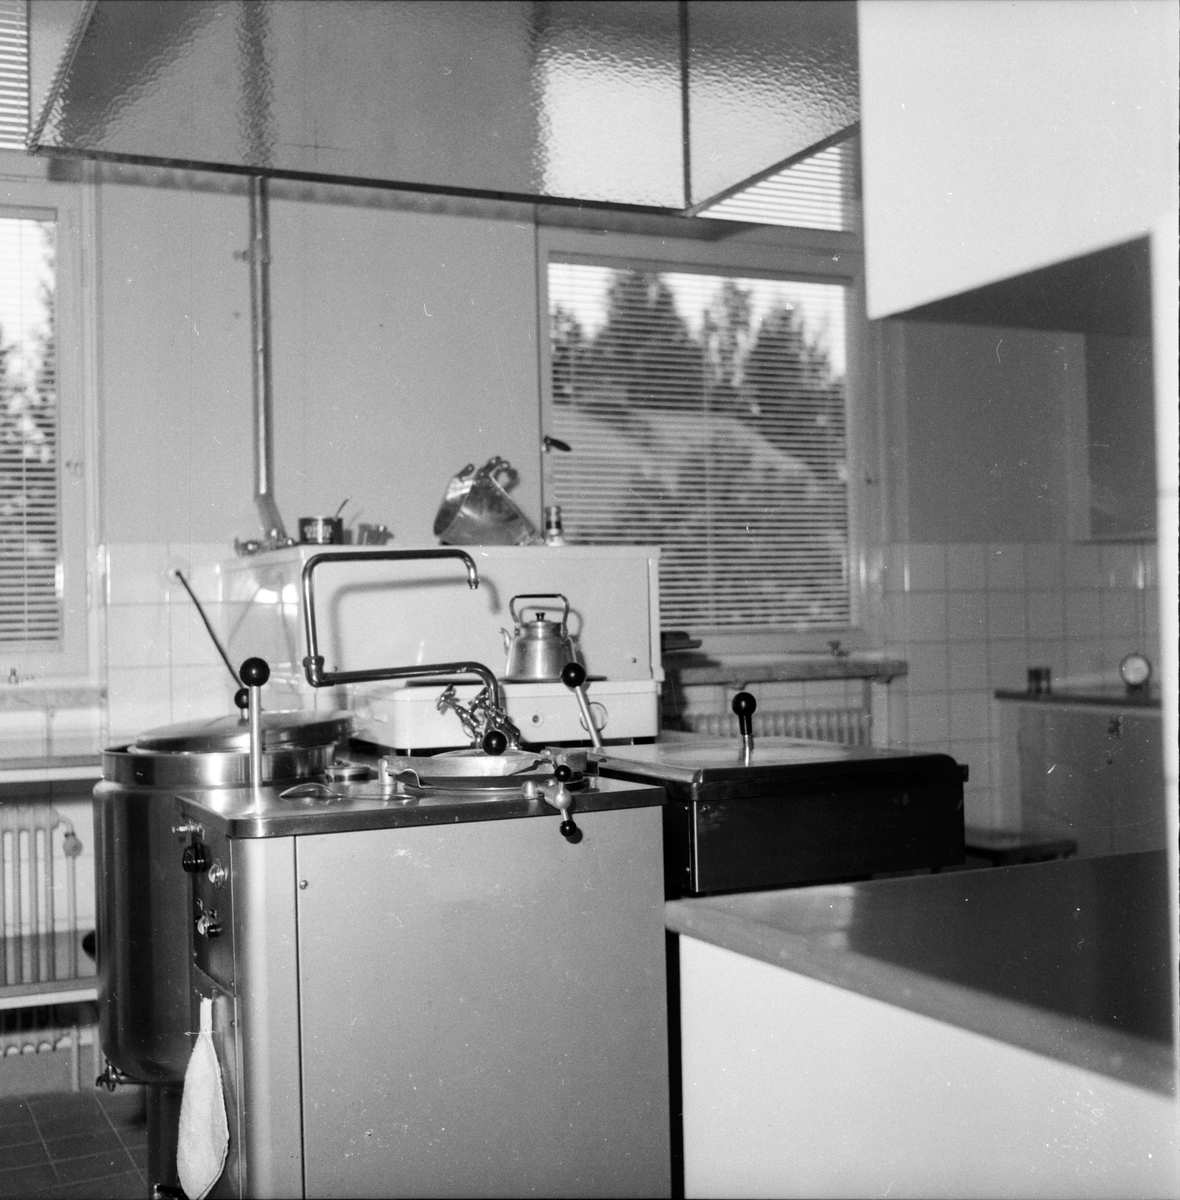 Nya skolan Holmsvden
9/9 1958